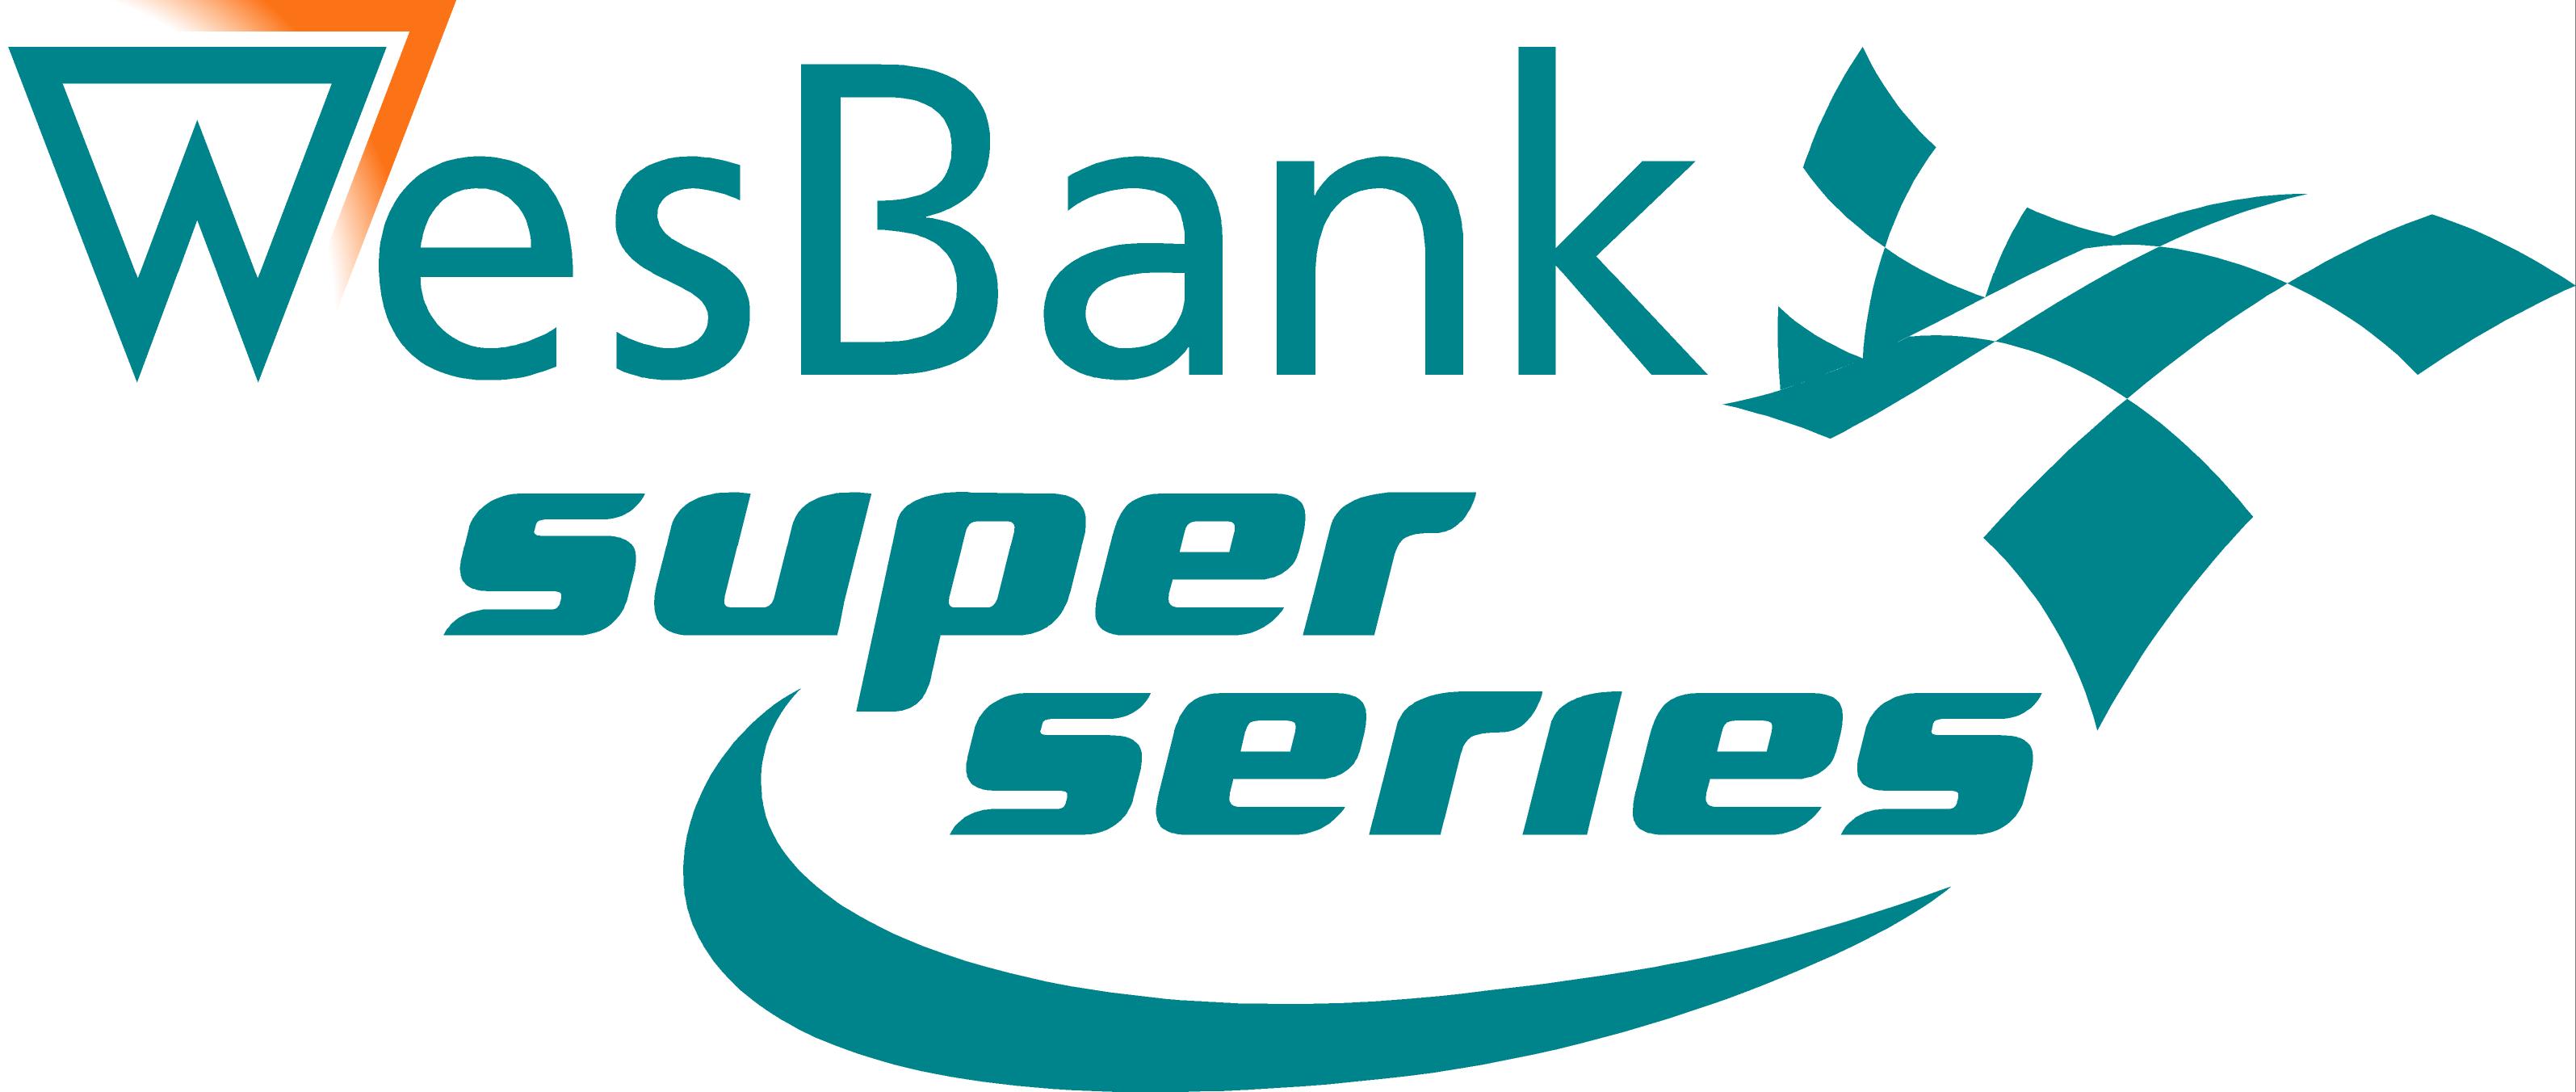 WesBank Super Series is South Africa's premier national circuit motor racing series.